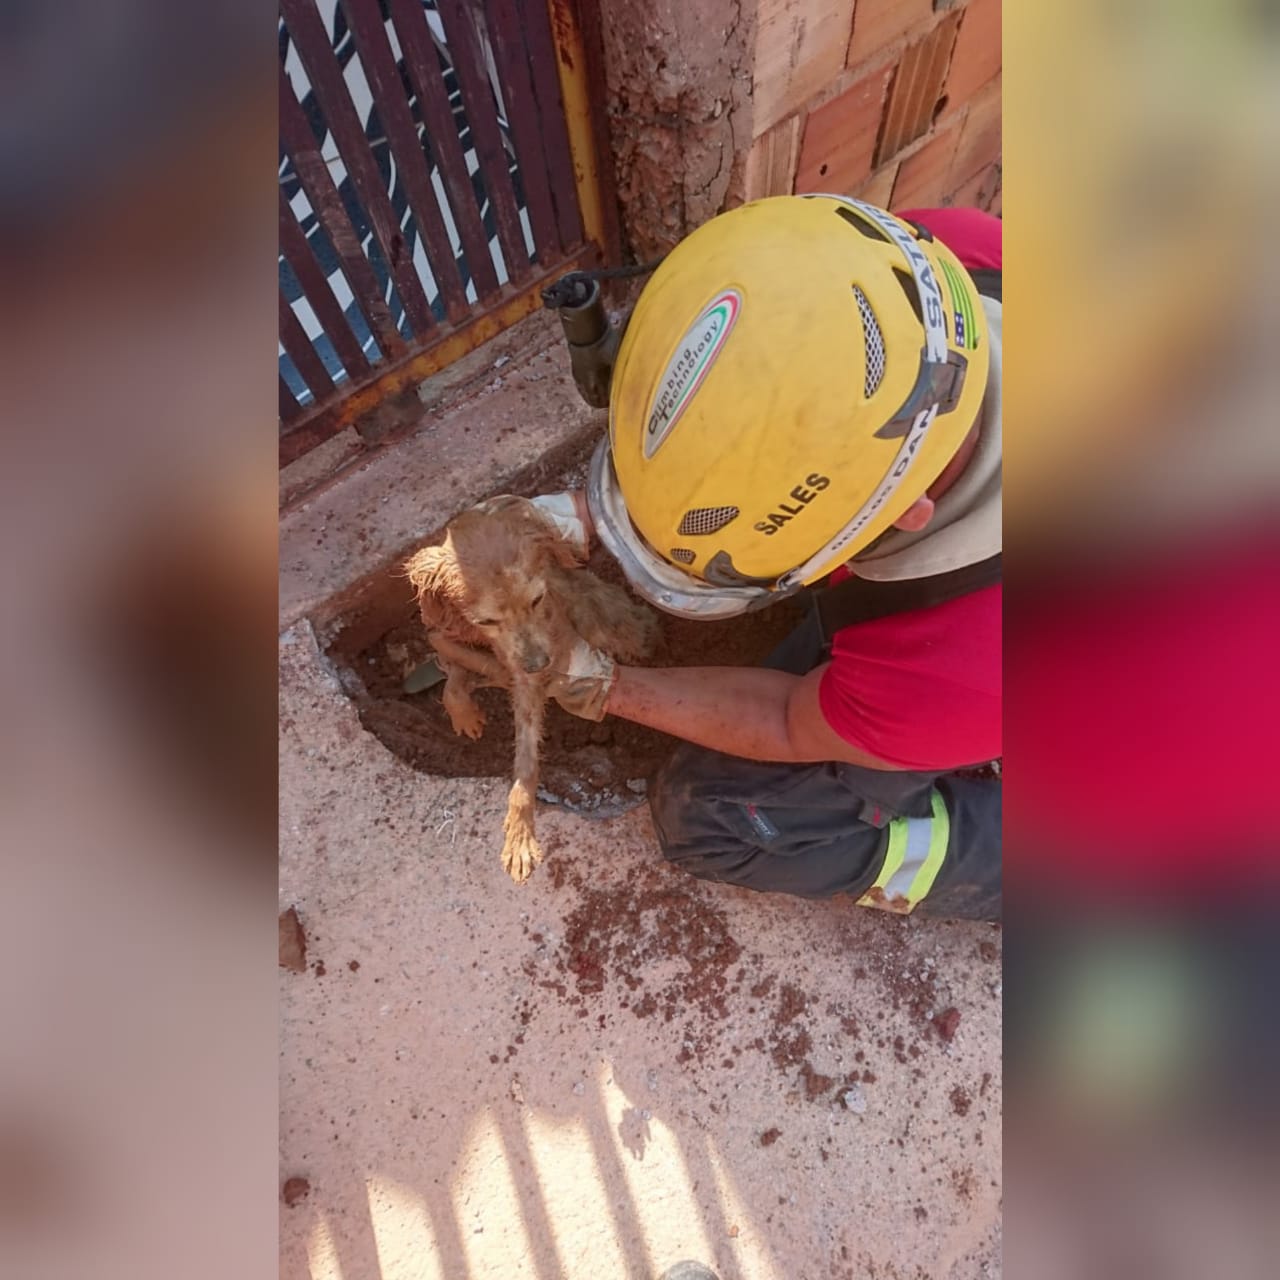 Um cão ficou preso na tubulação de um esgoto residencial em Águas Lindas de Goiás. Ele foi resgatado e não ficou ferido. (Foto: divulgação/Corpo de Bombeiros)